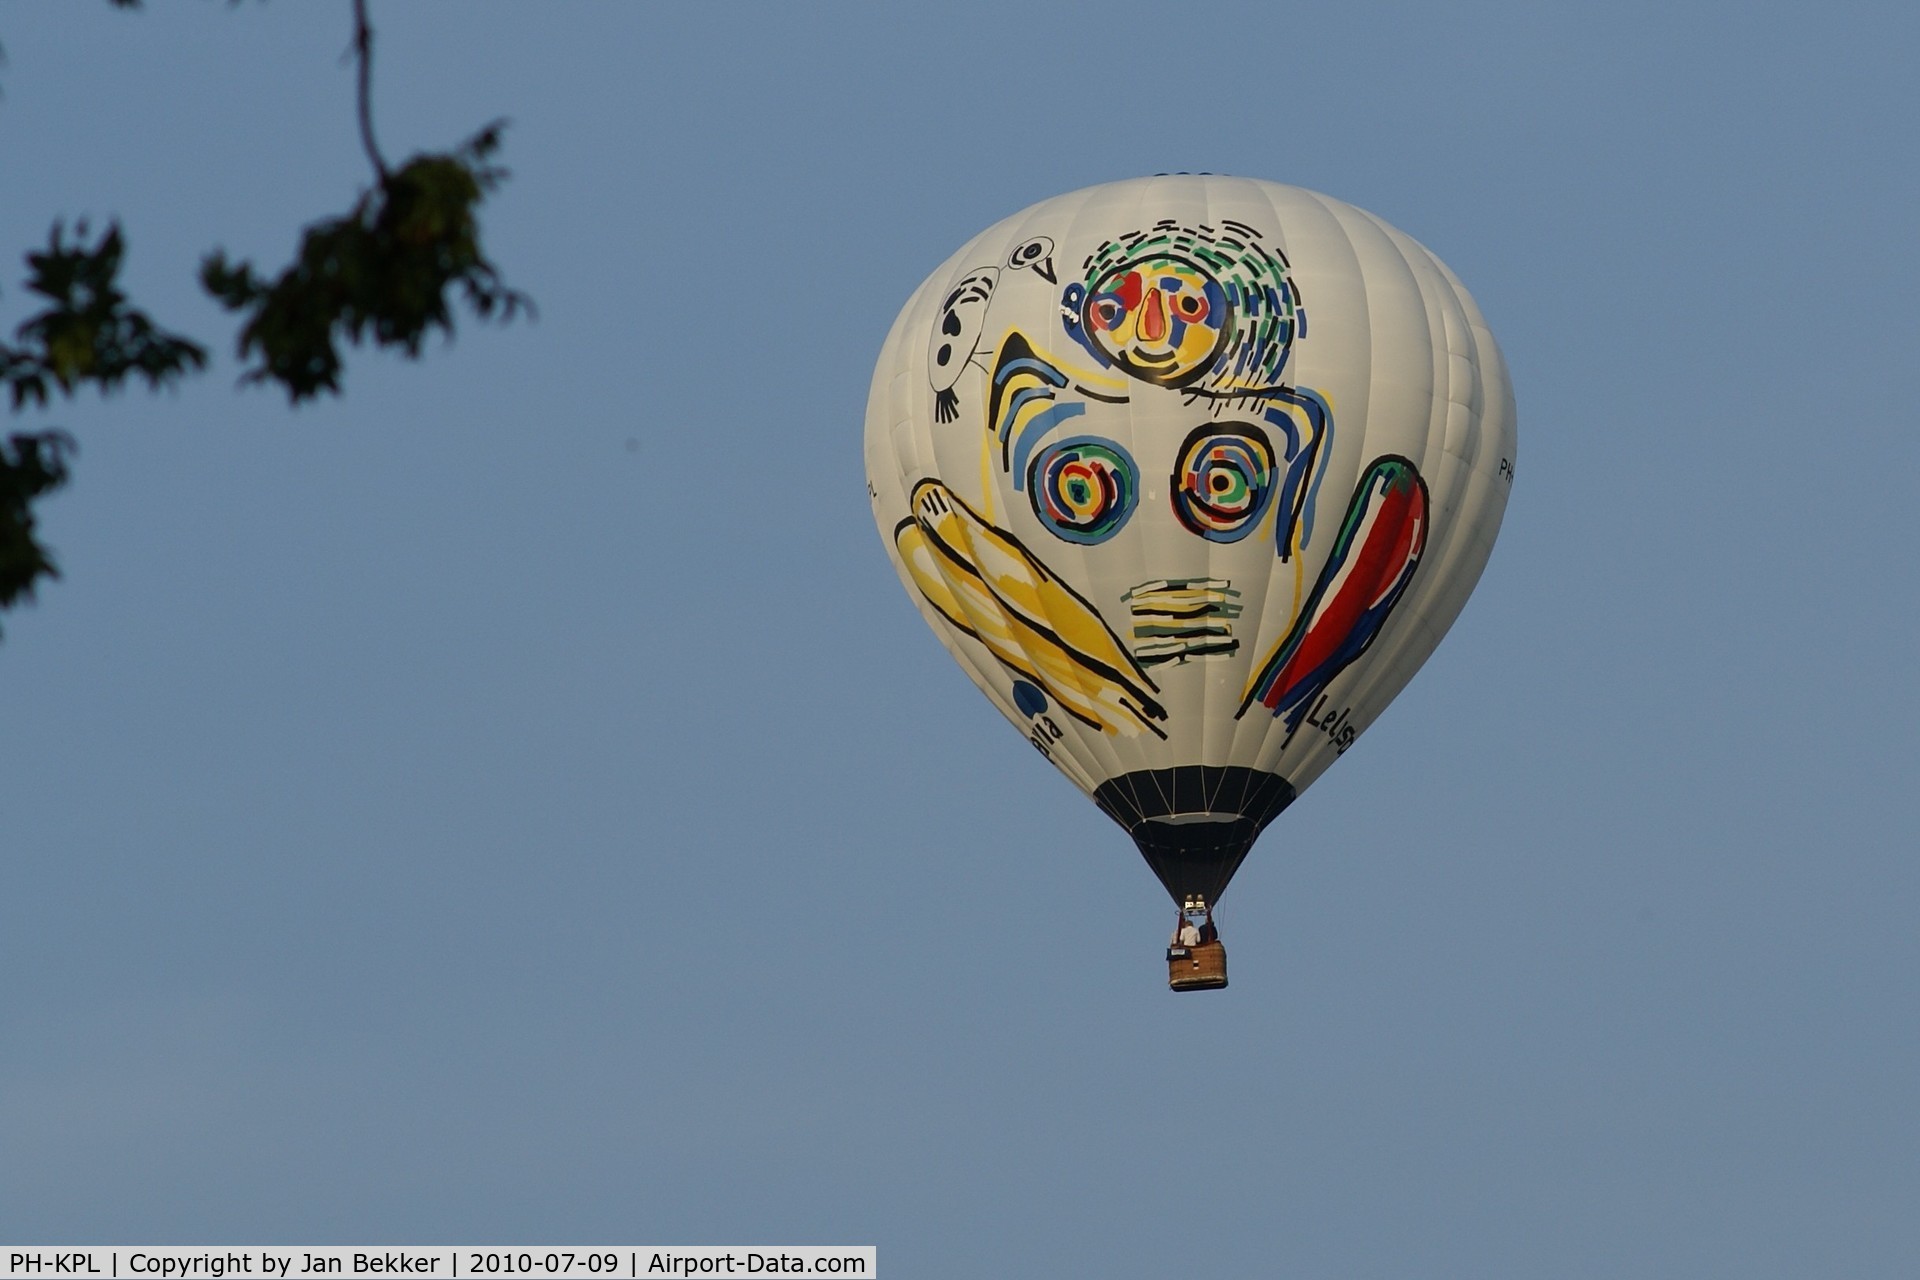 PH-KPL, 2010 Cameron Balloons Z-105 C/N 11436, Flying over our garden in Lelystad